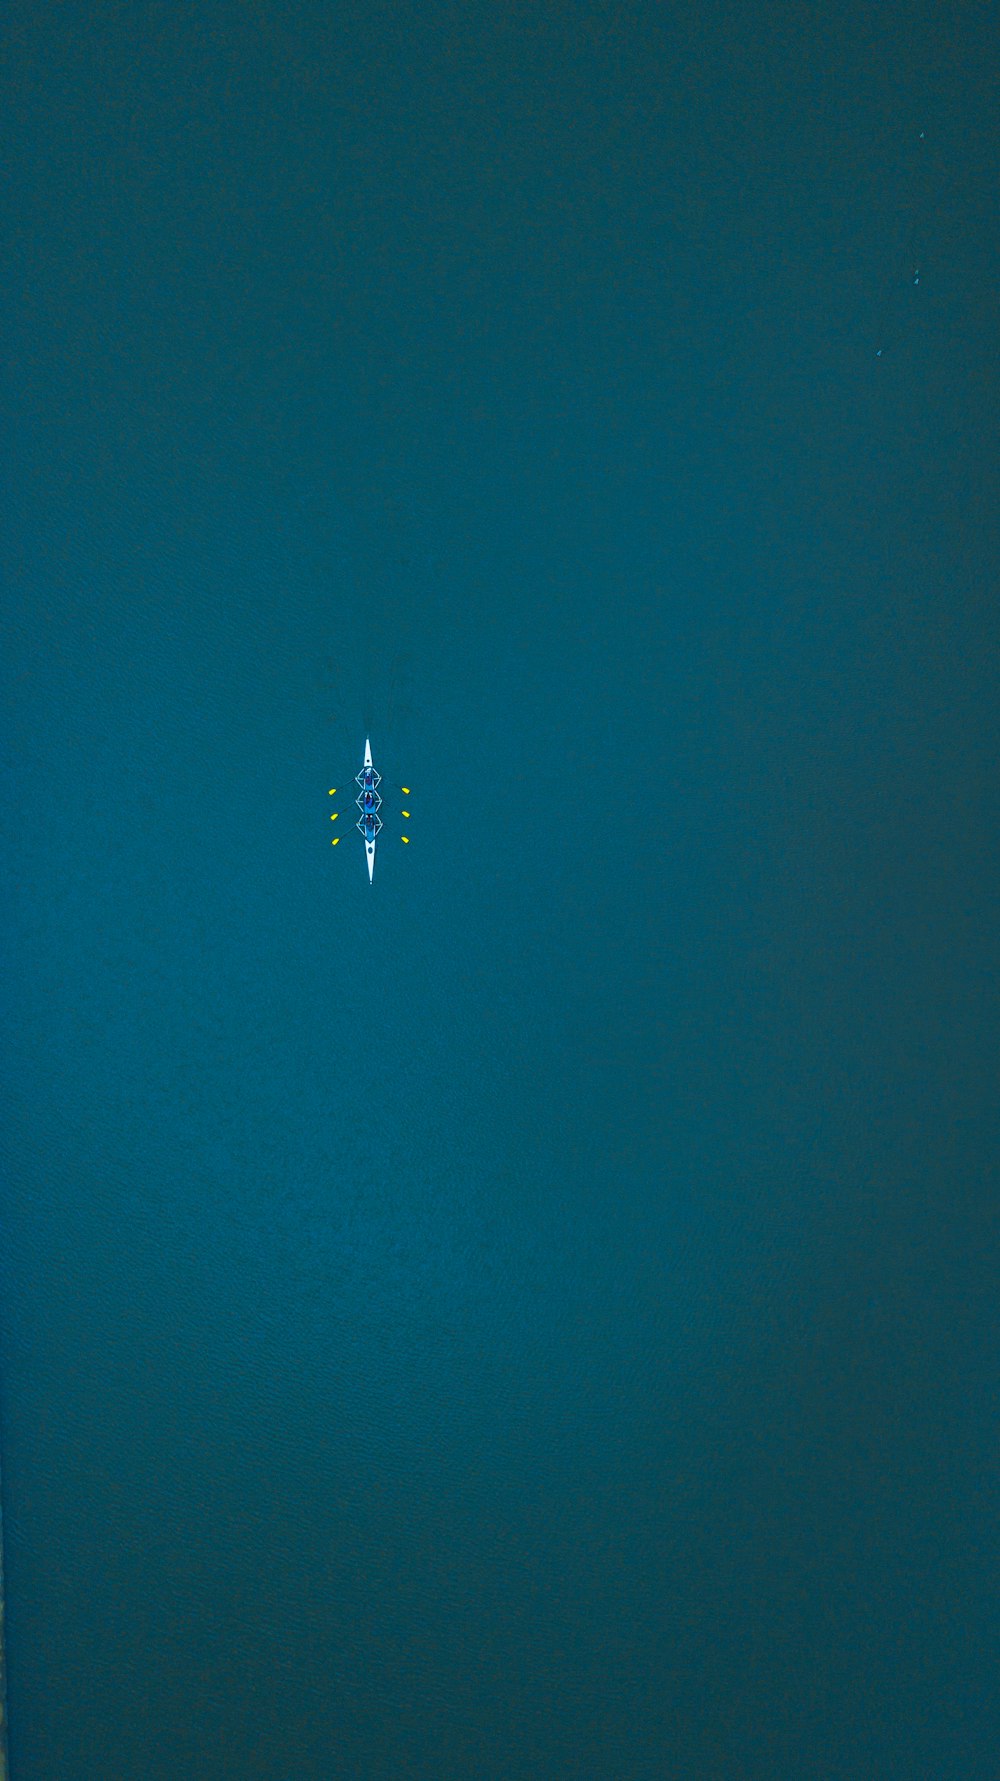 海のサーフボードに乗った人の航空写真